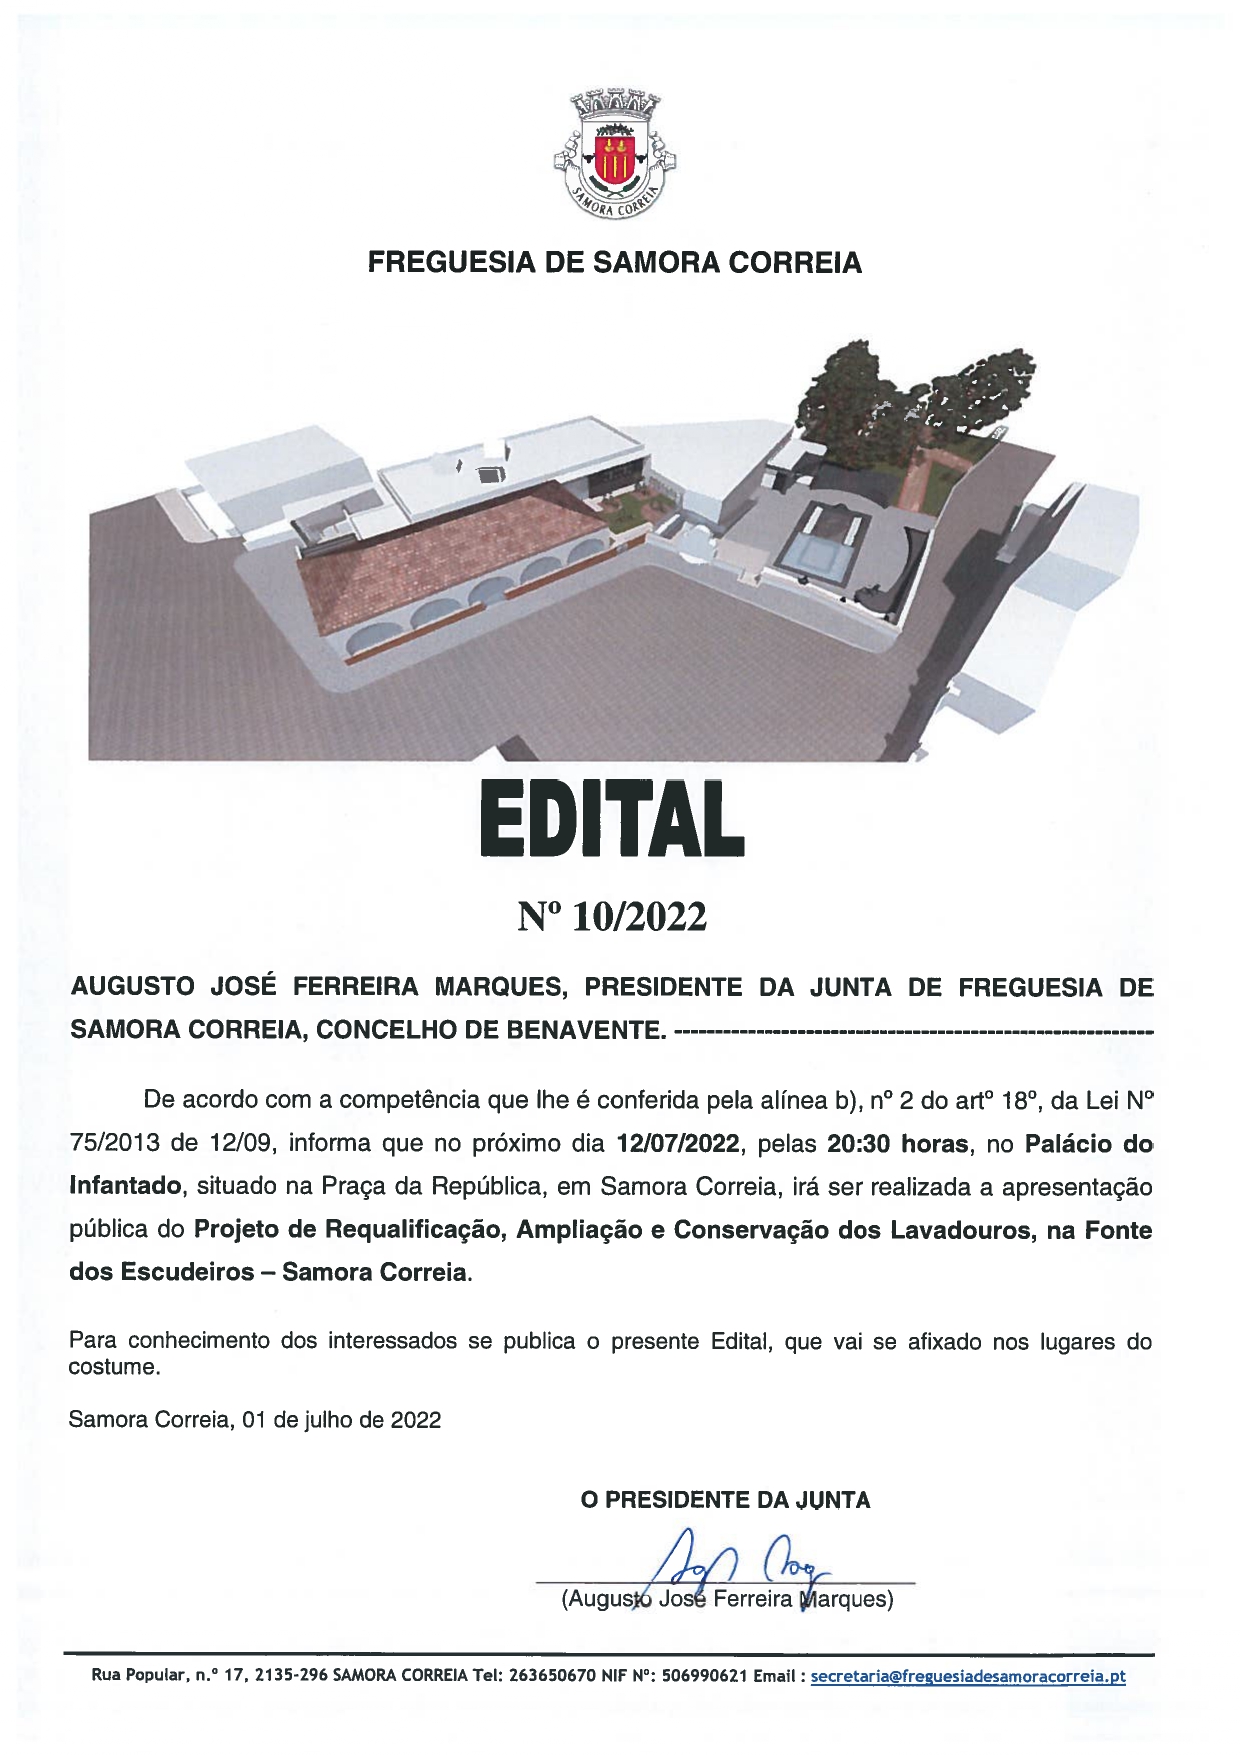 Imagem Edital Nº 10/2022 - Apresentação Pública do Projeto de Requalificação, Ampliação e Conservação dos Lavadouros